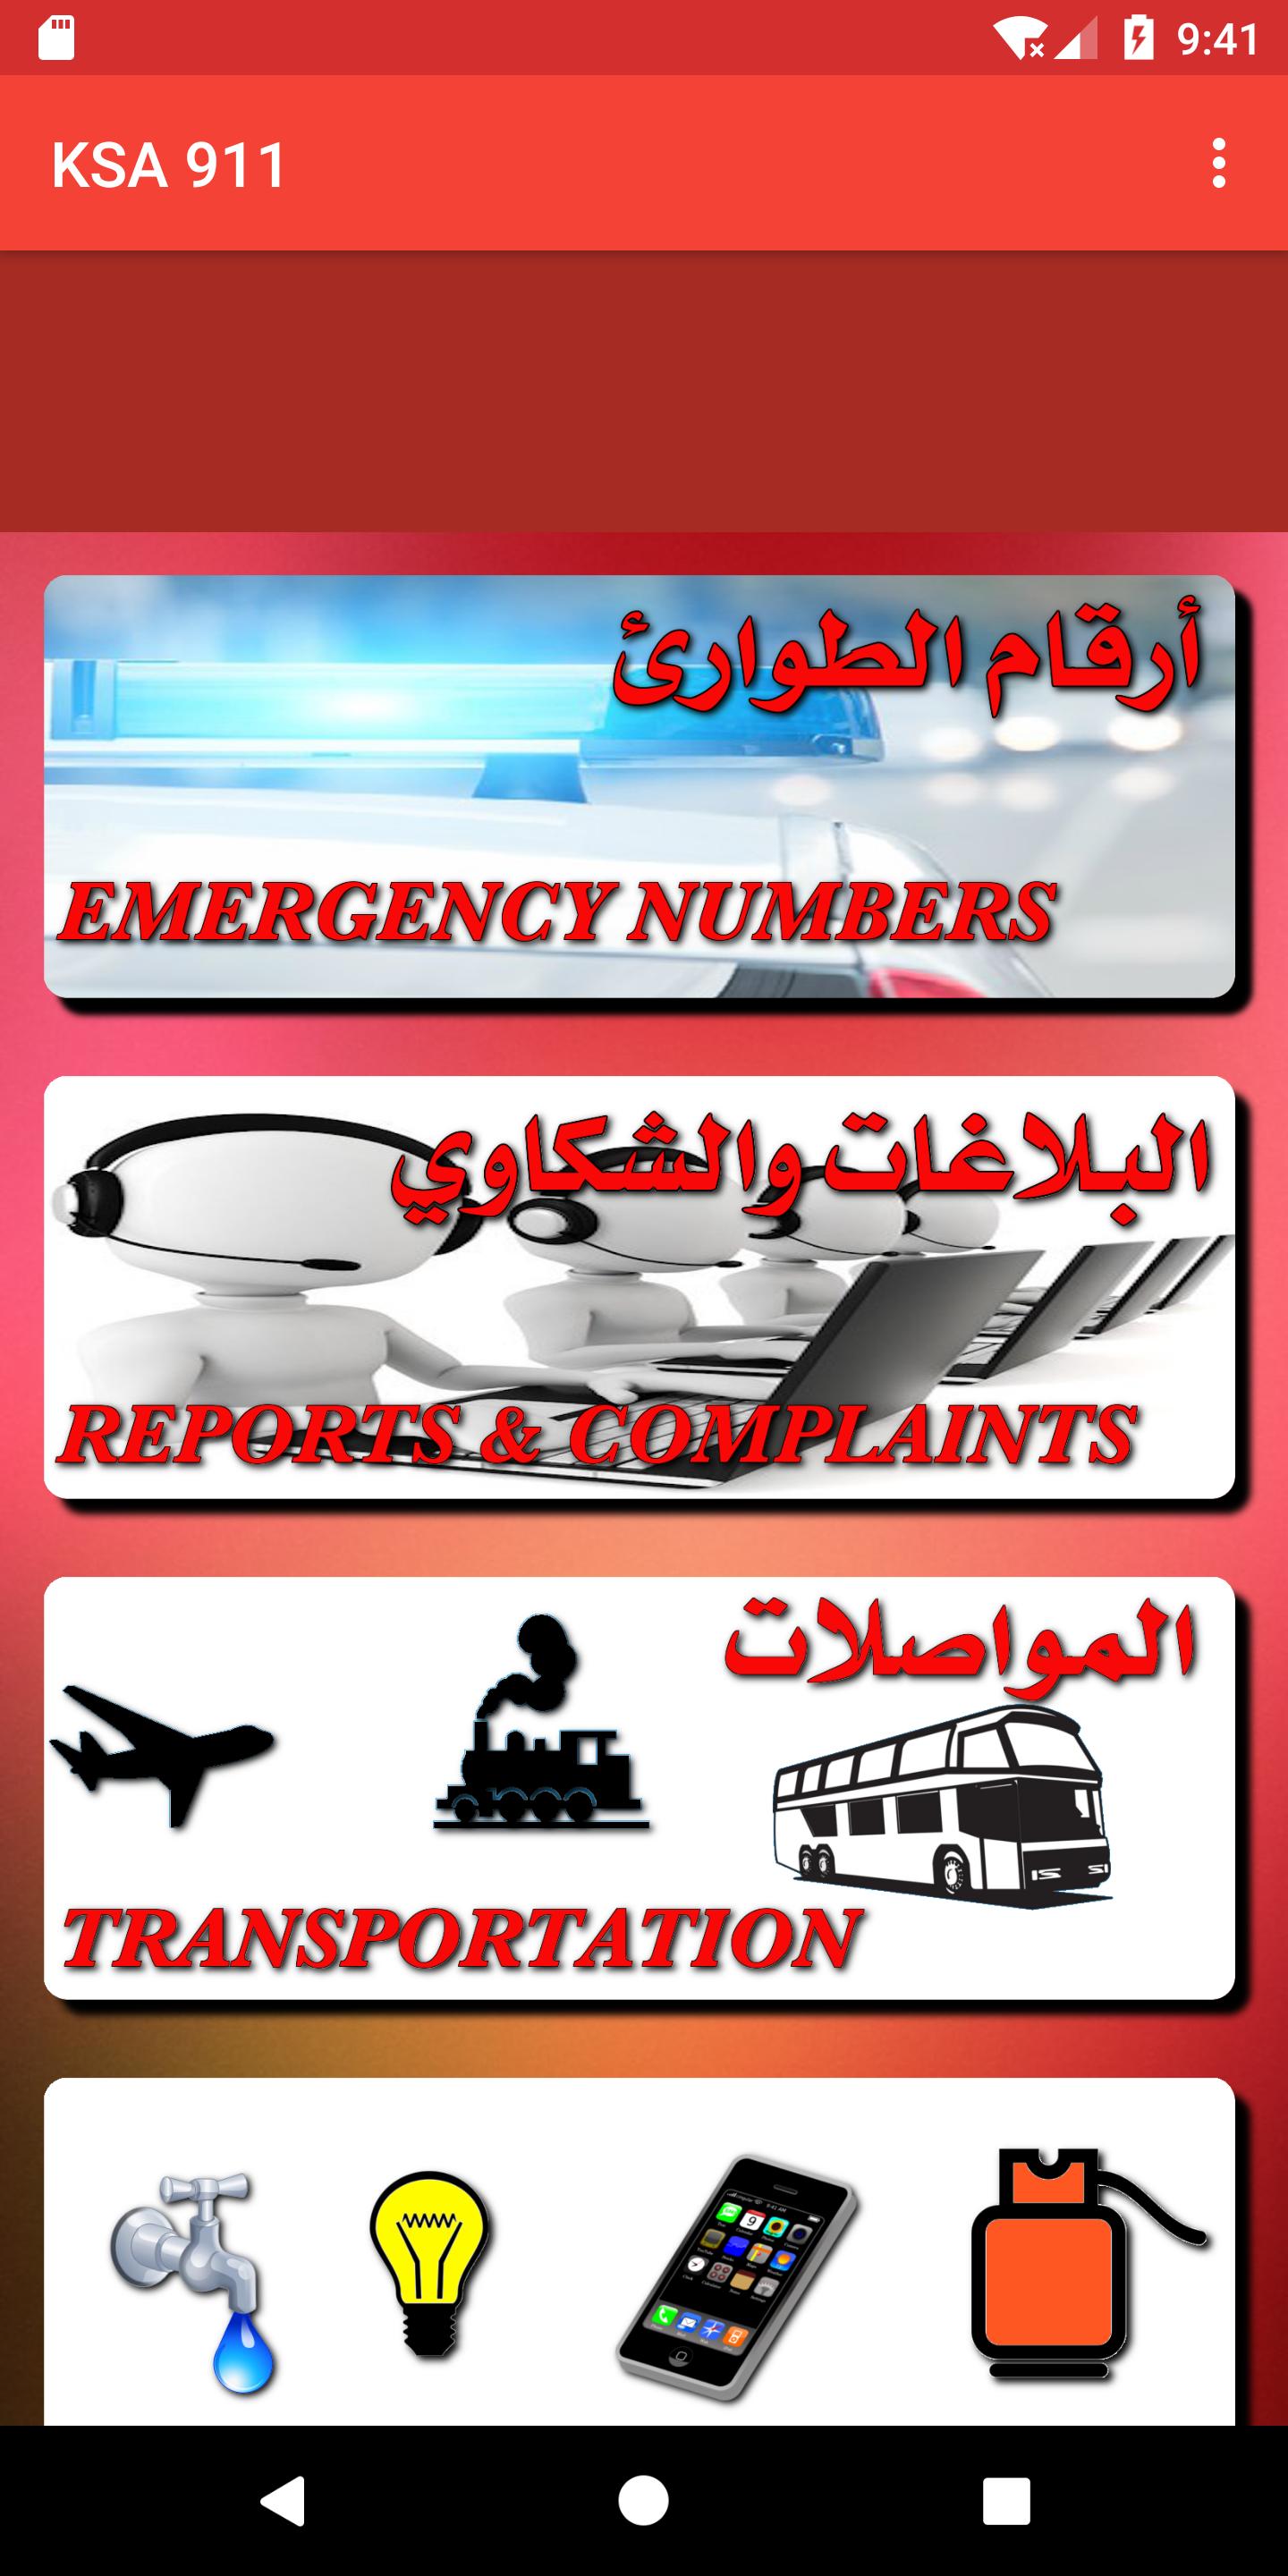 ارقام الطوارئ في المملكه